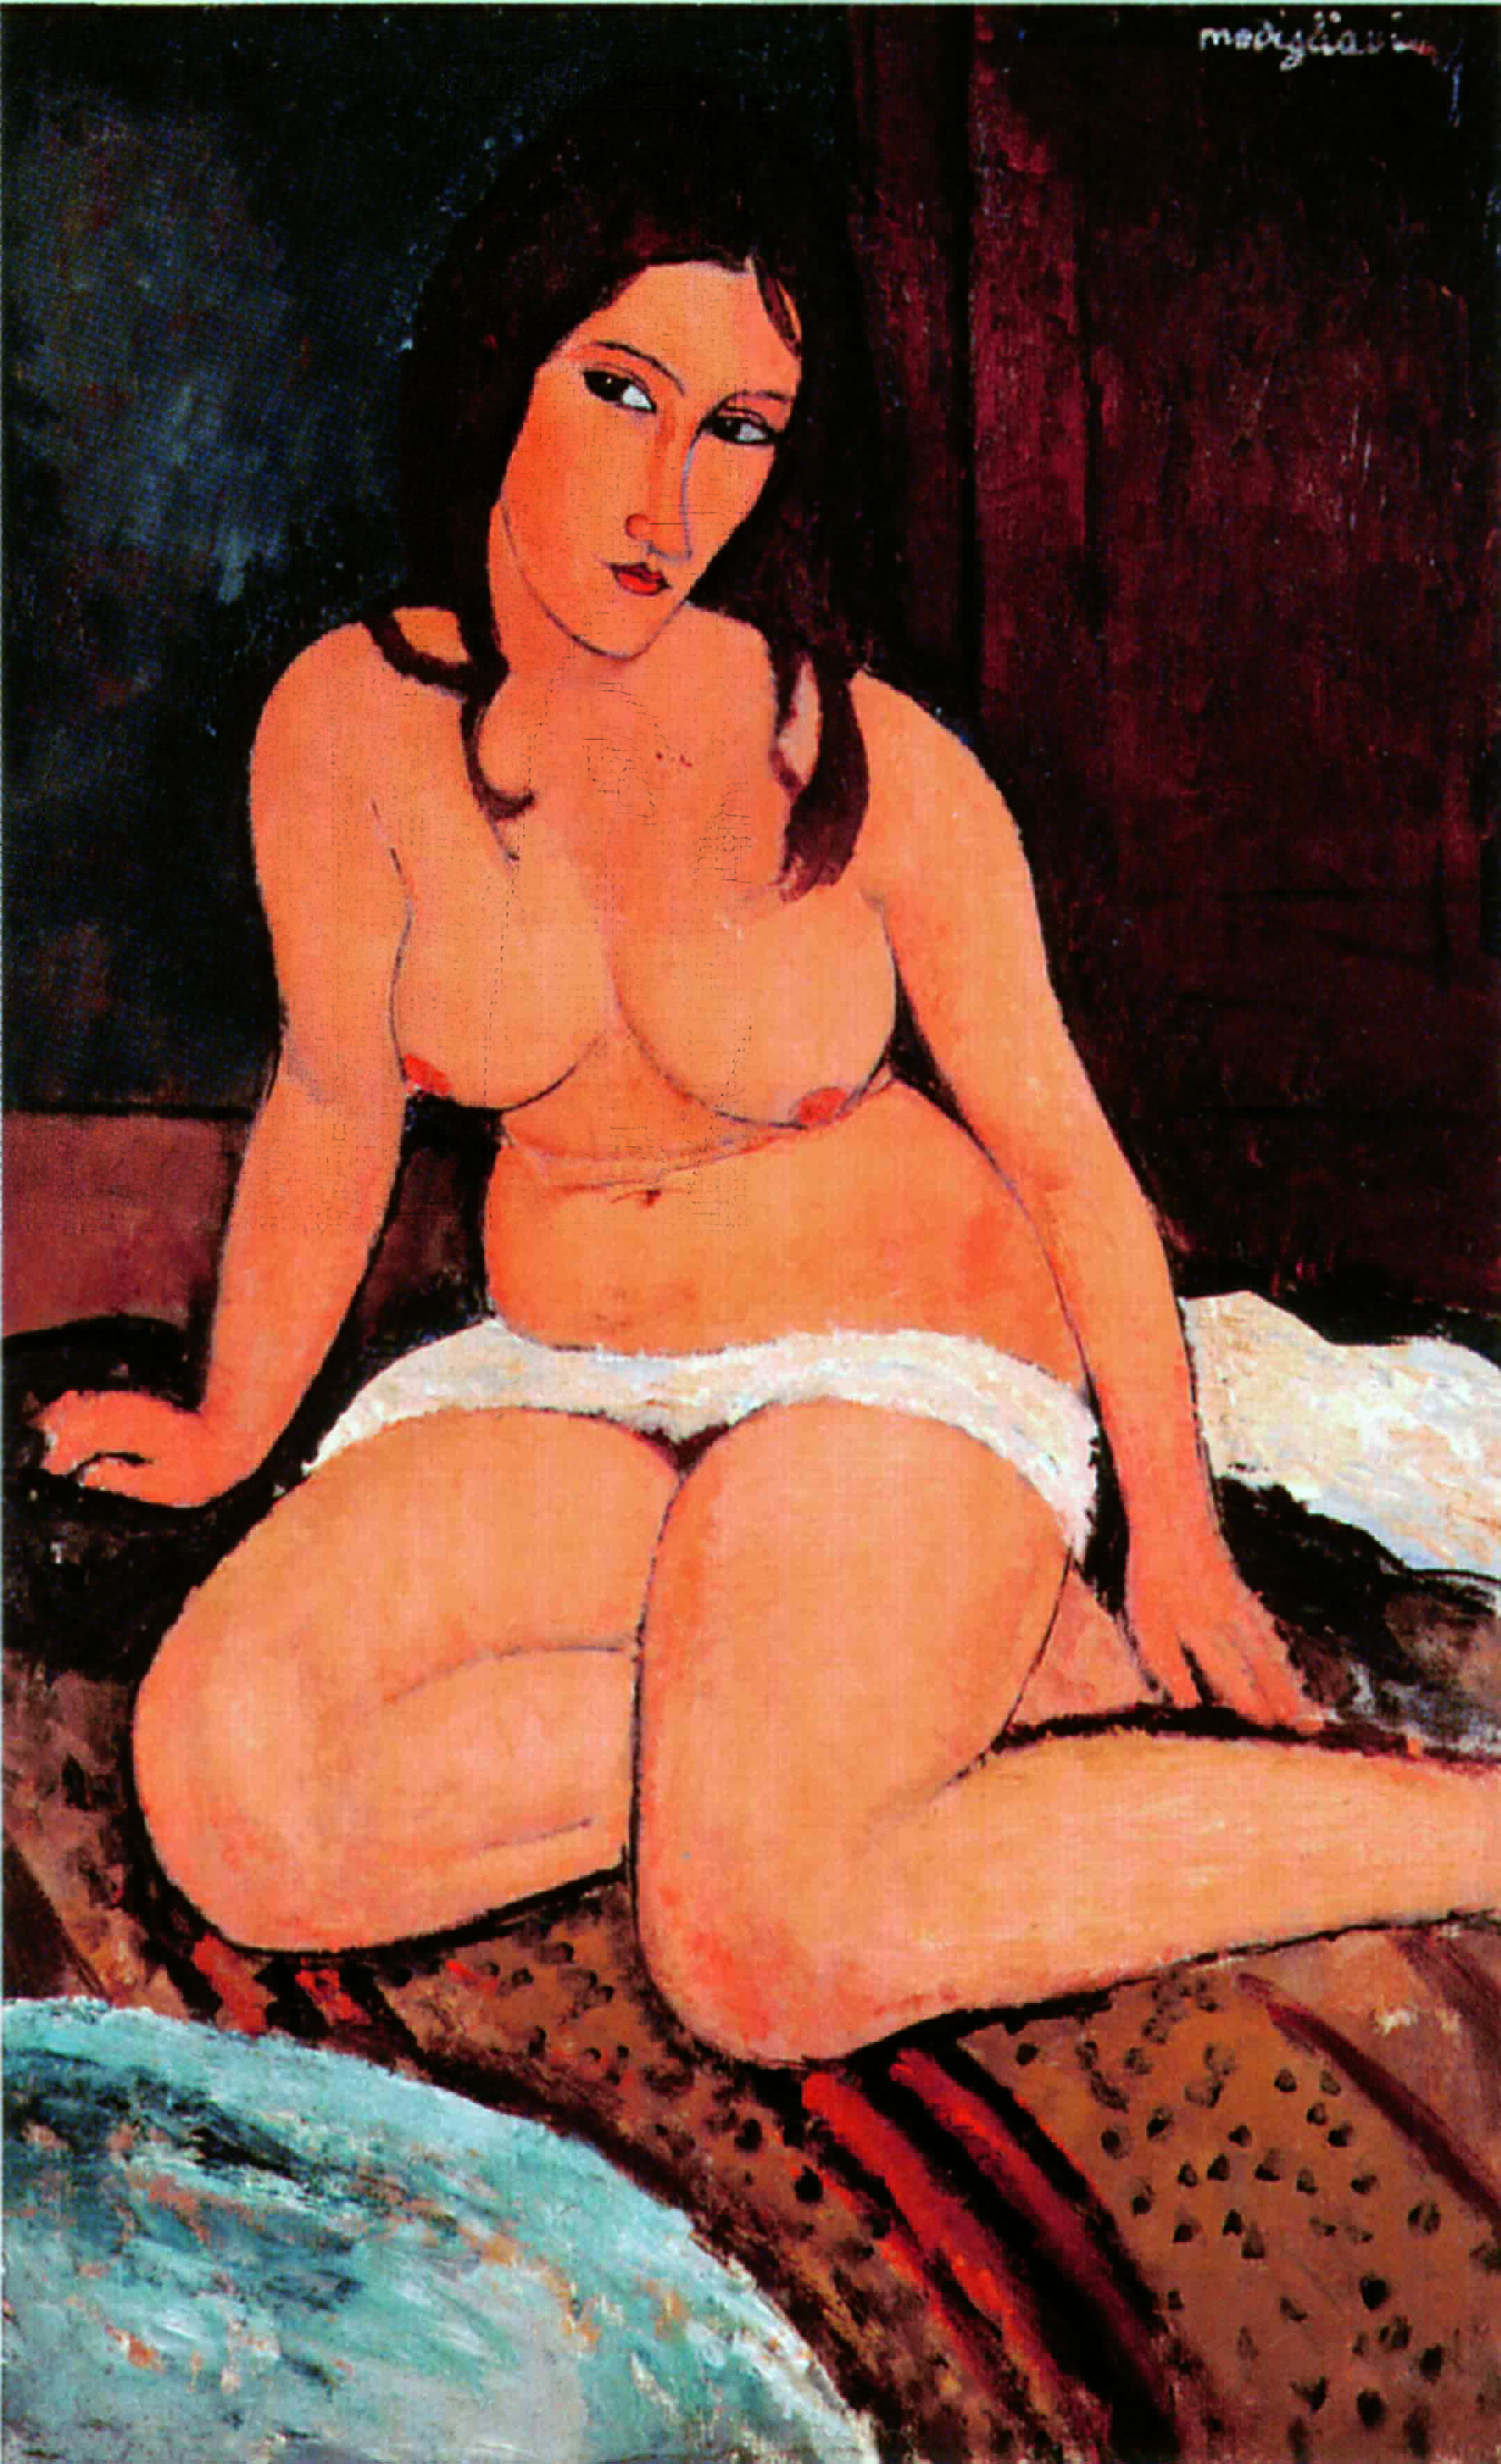 Amedeo Modigliani, Nudo accovacciato, 1917. Anversa, Koninklijk Museum voor Schone Kunsten